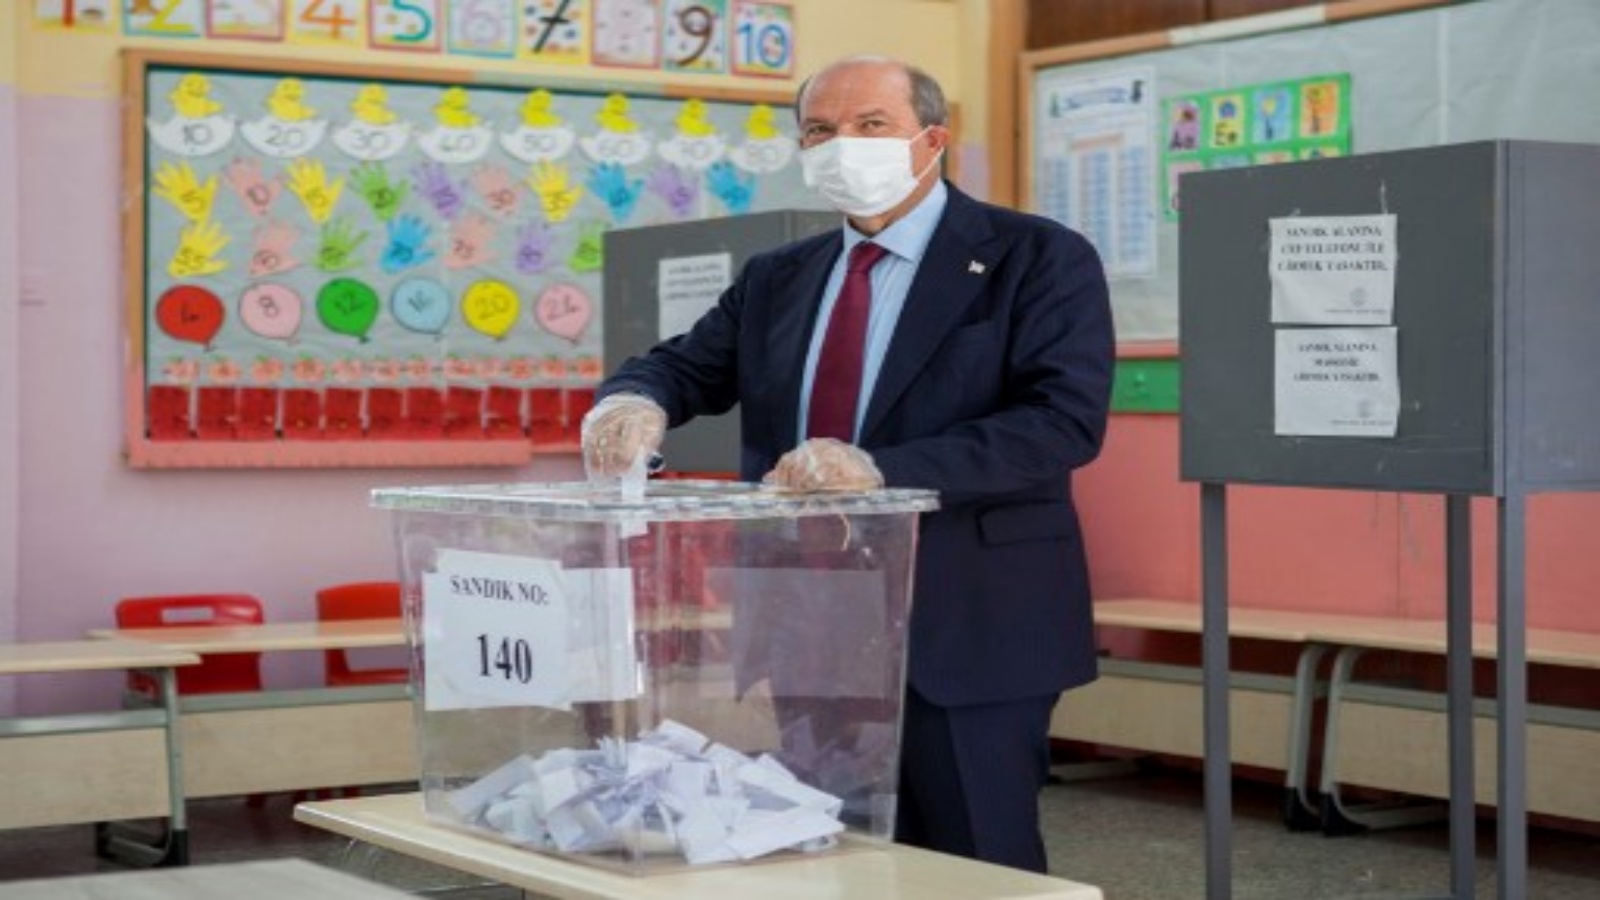 رئيس وزراء الجمهورية التركية لشمال قبرص (TRNC) ، إرسين تاتار ، بصوته في محطة اقتراع في الجزء الشمالي من نيقوسيا ، عاصمة جمهورية شمال قبرص التركية ، خلال الجولة الثانية من الانتخابات الرئاسية في 18 أكتوبر ، 2020